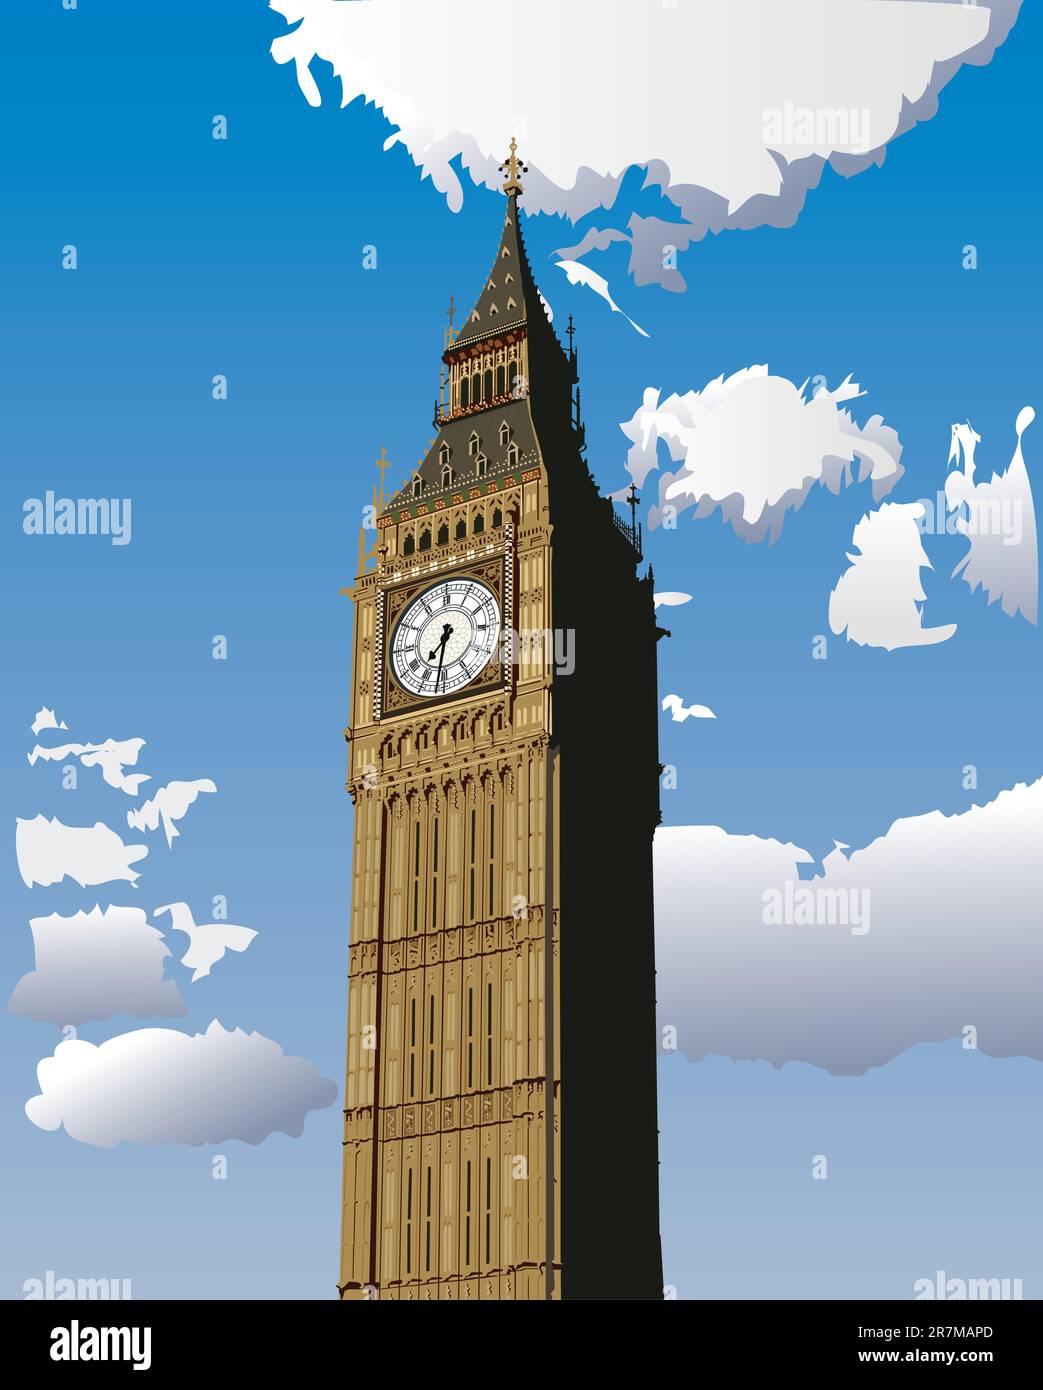 Vektor-Illustration von Big Ben, eines der beliebtesten Wahrzeichen in London, Großbritannien. Stock Vektor